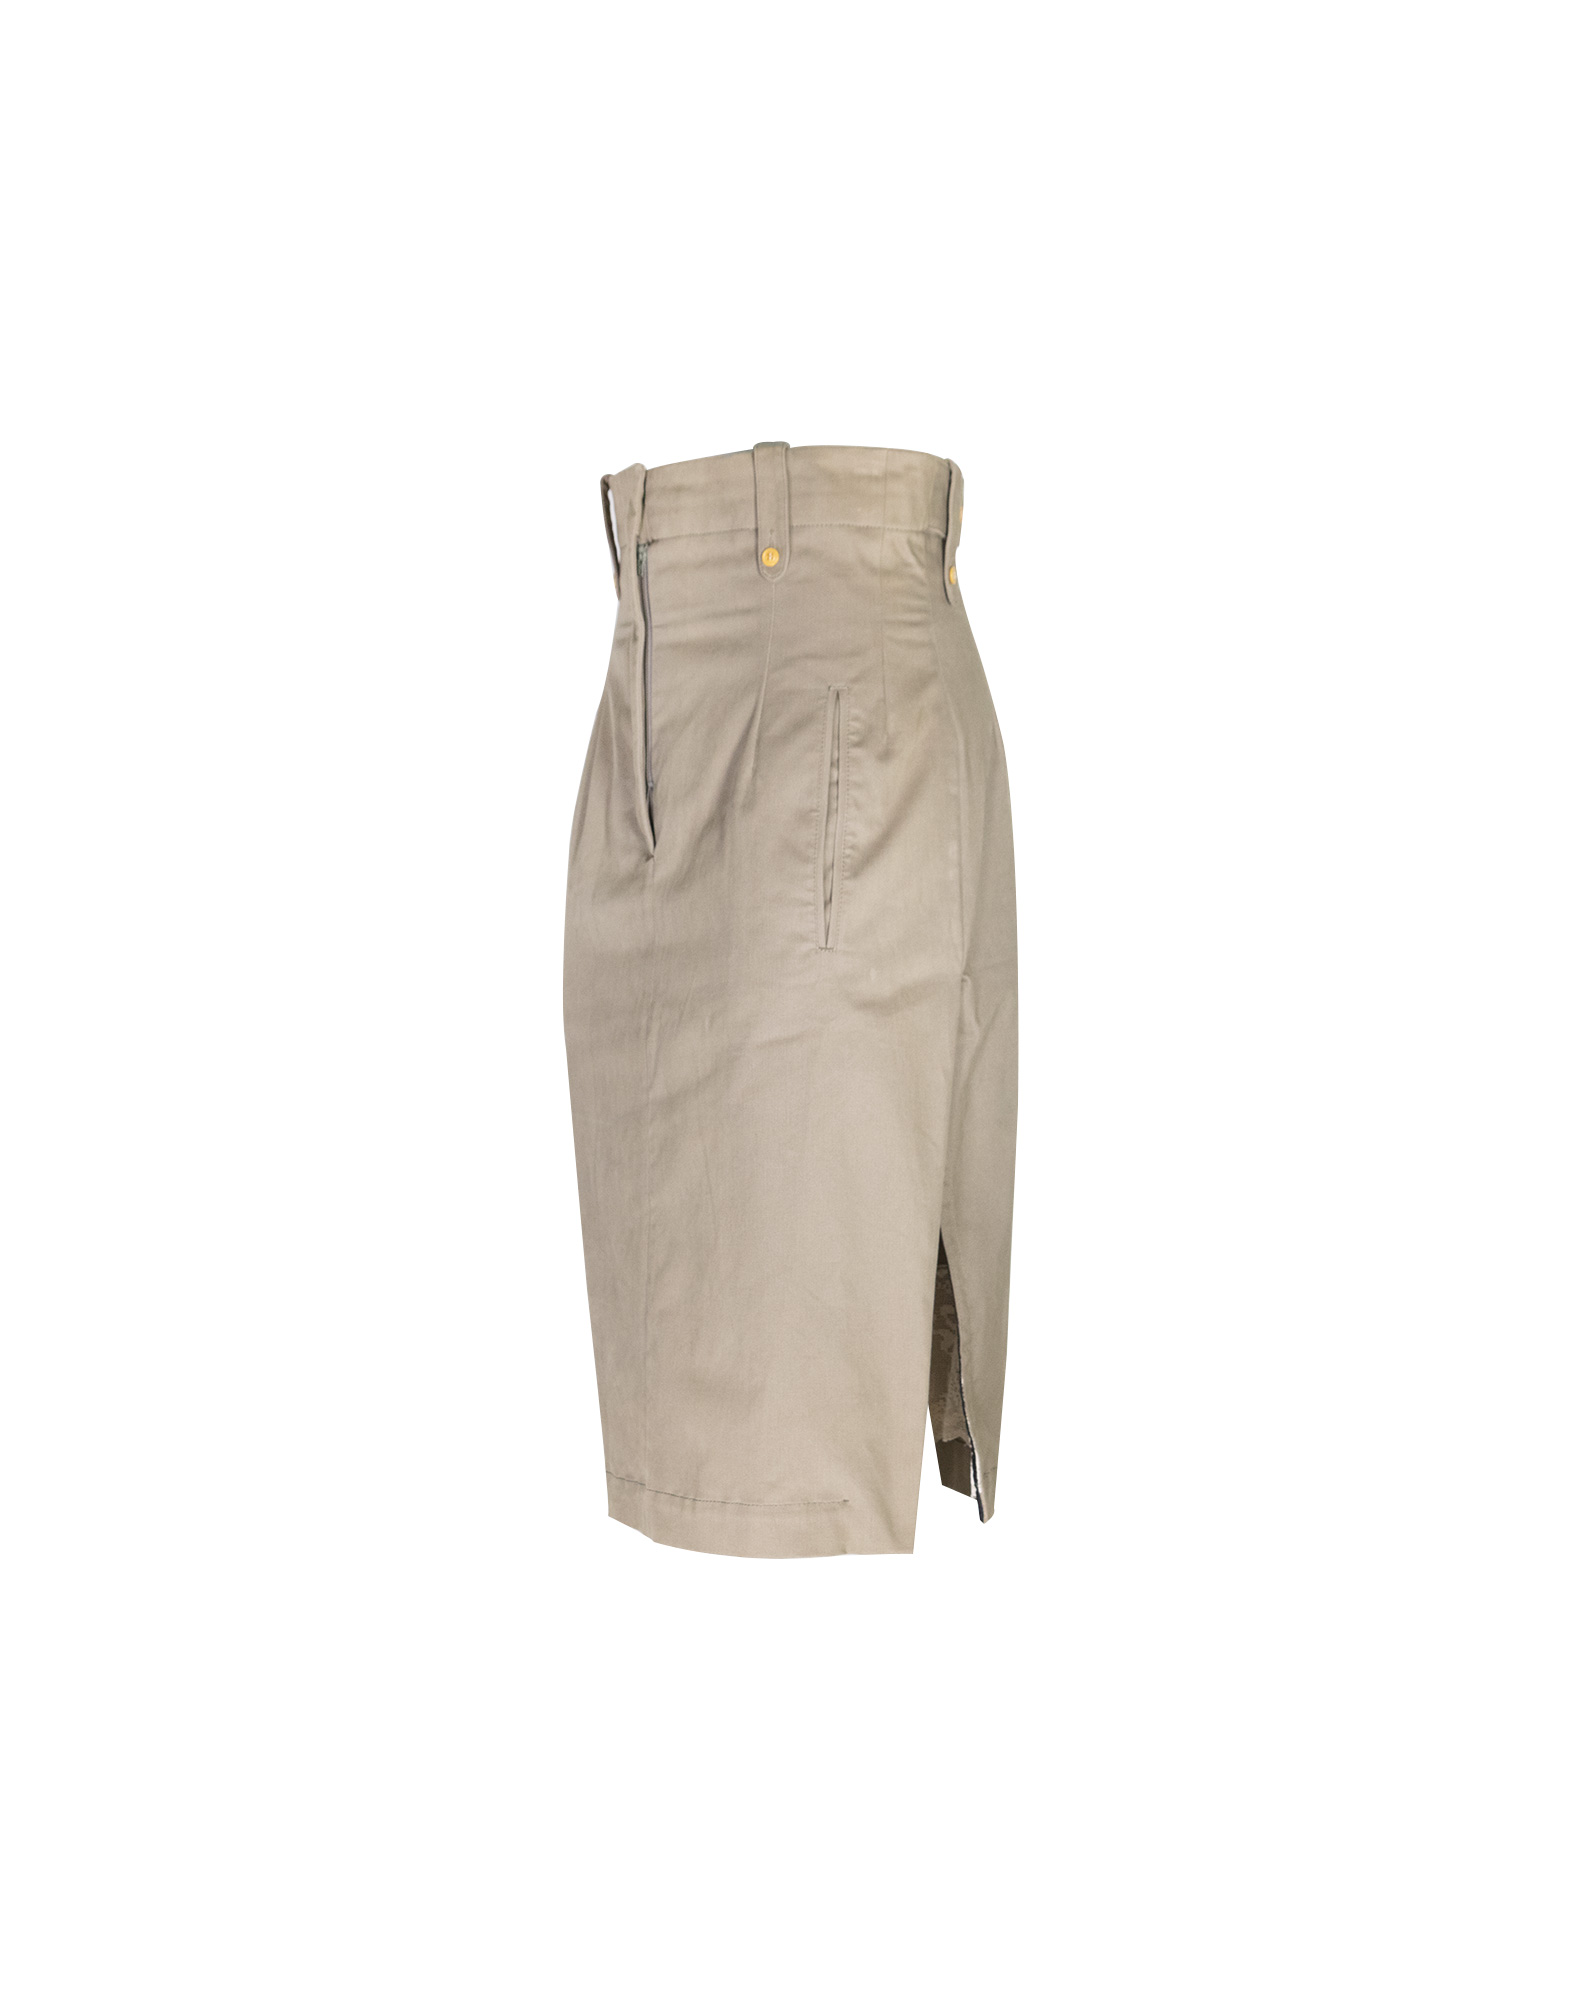 Paul Smith - High-waisted pencil skirt